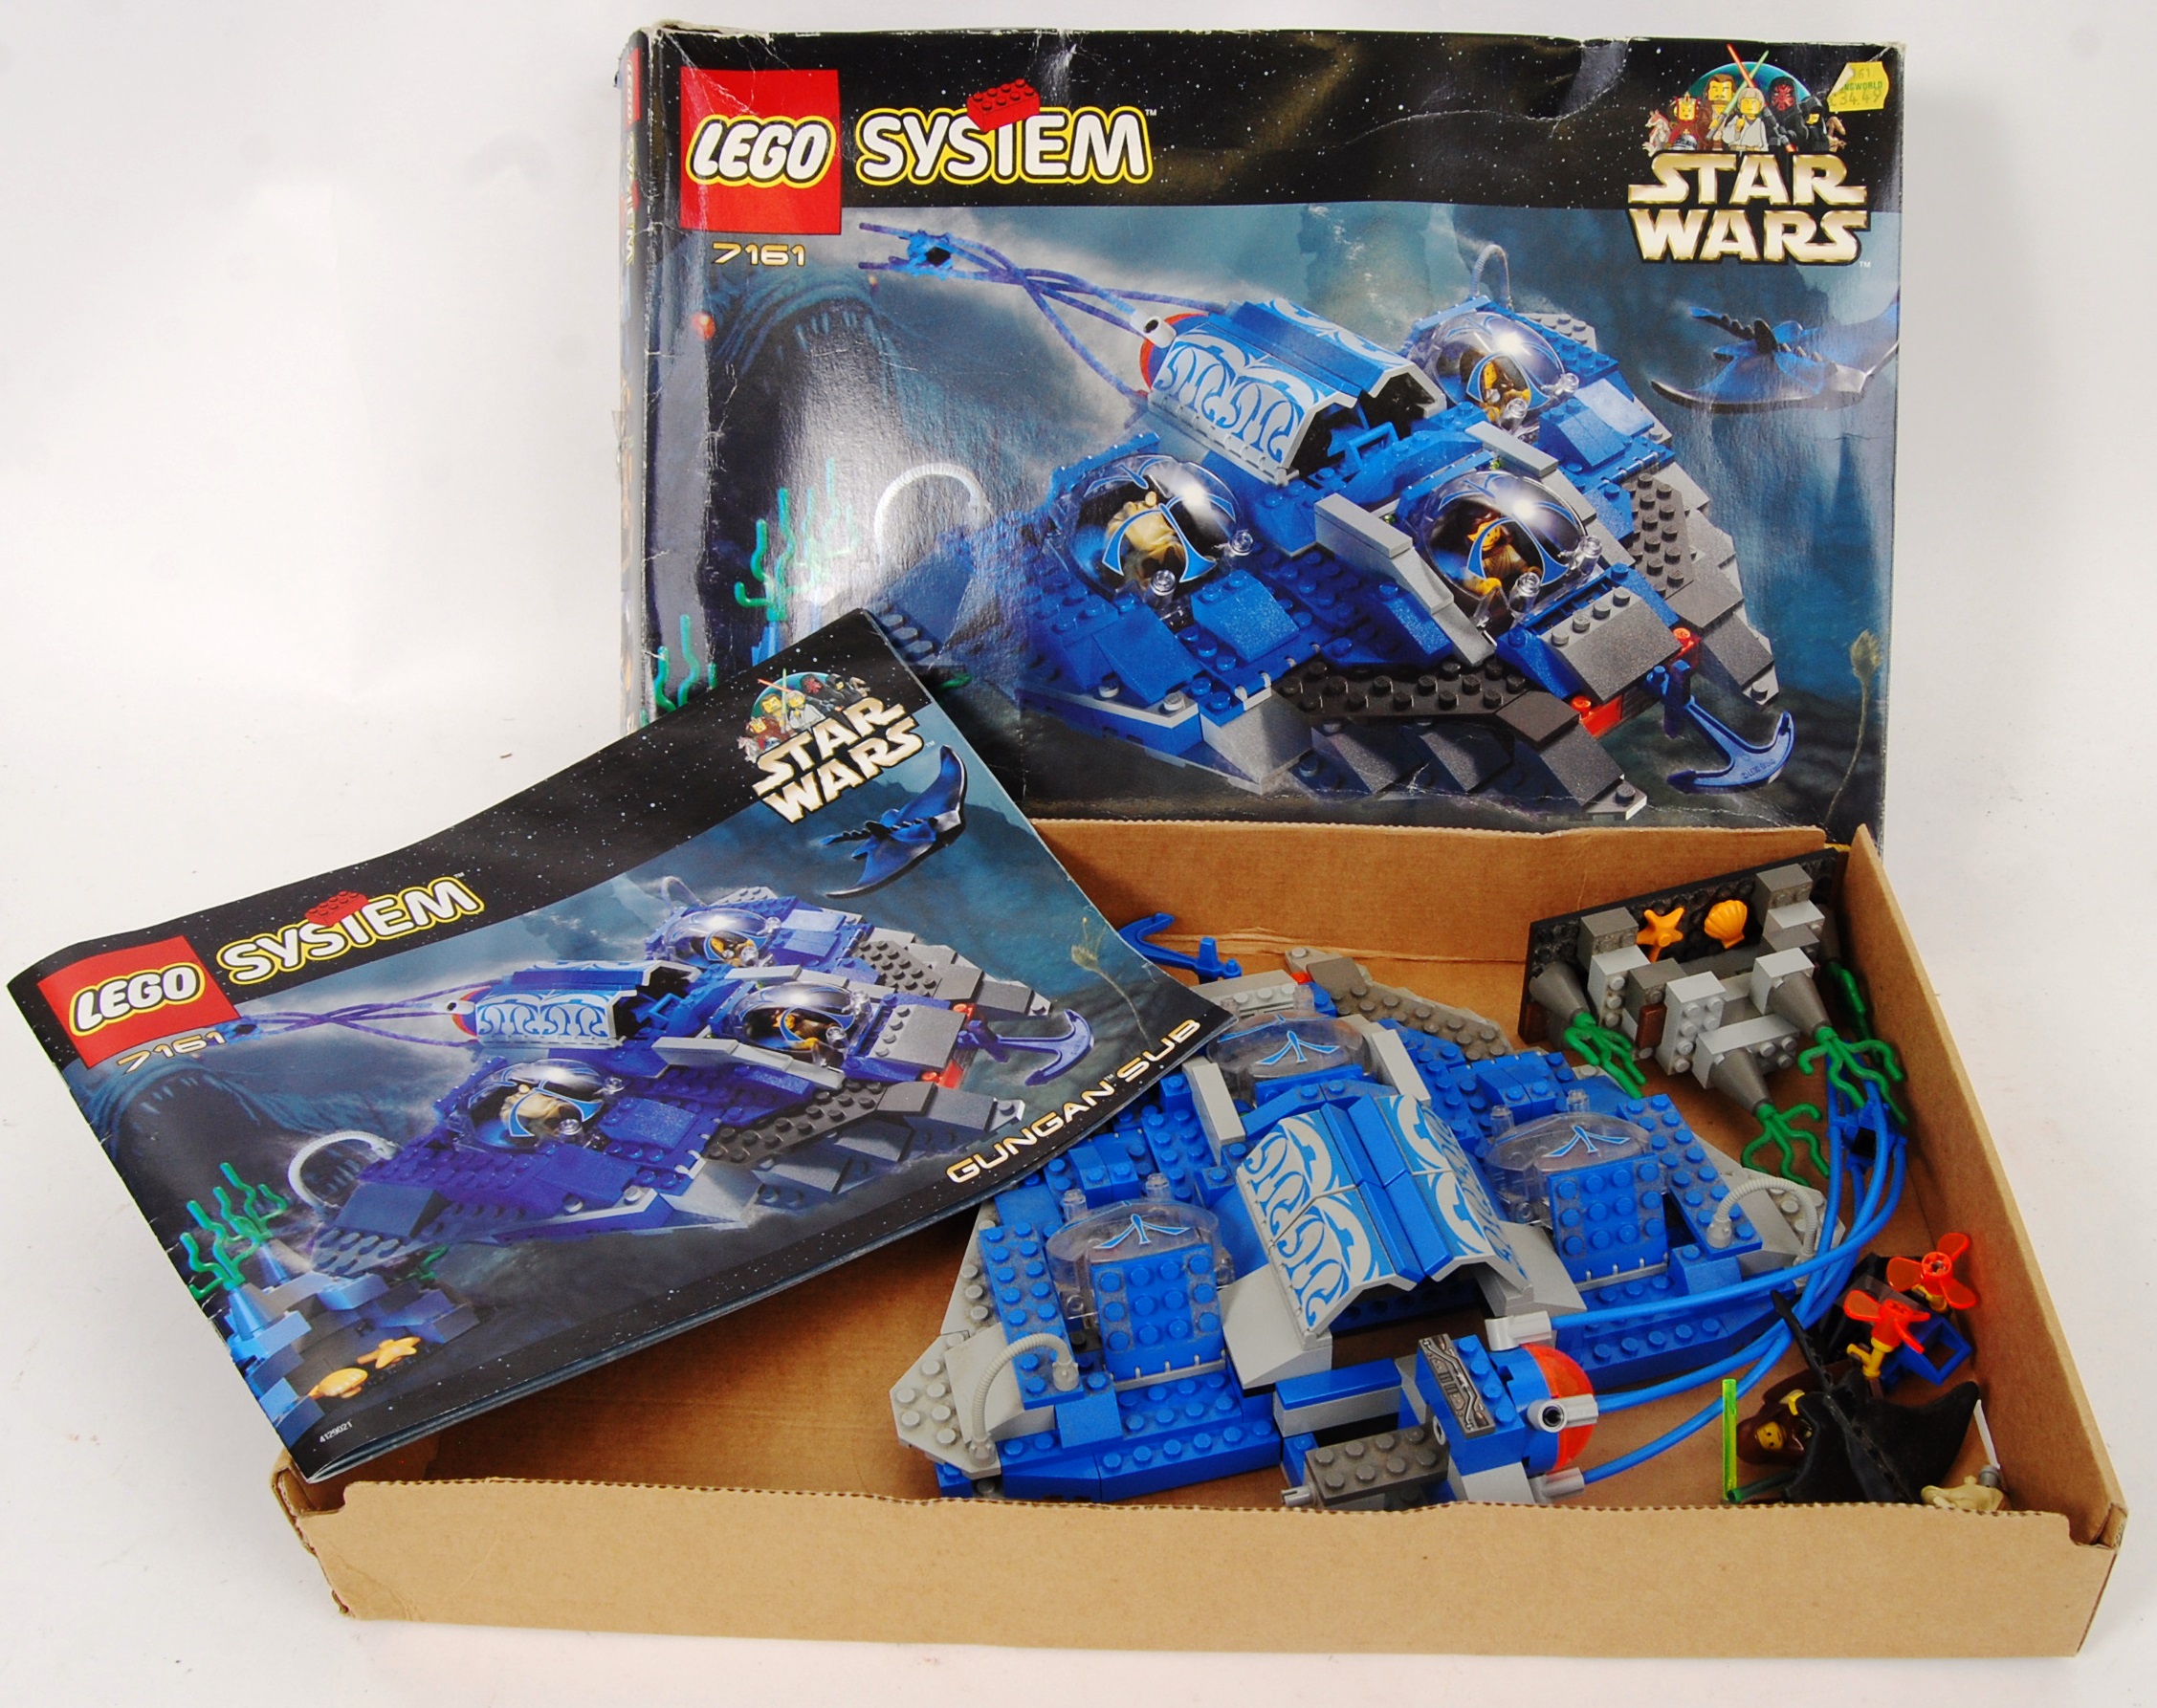 LEGO STAR WARS: A vintage Lego Star Wars System set 7161 'Gungan Sub'. - Image 2 of 3